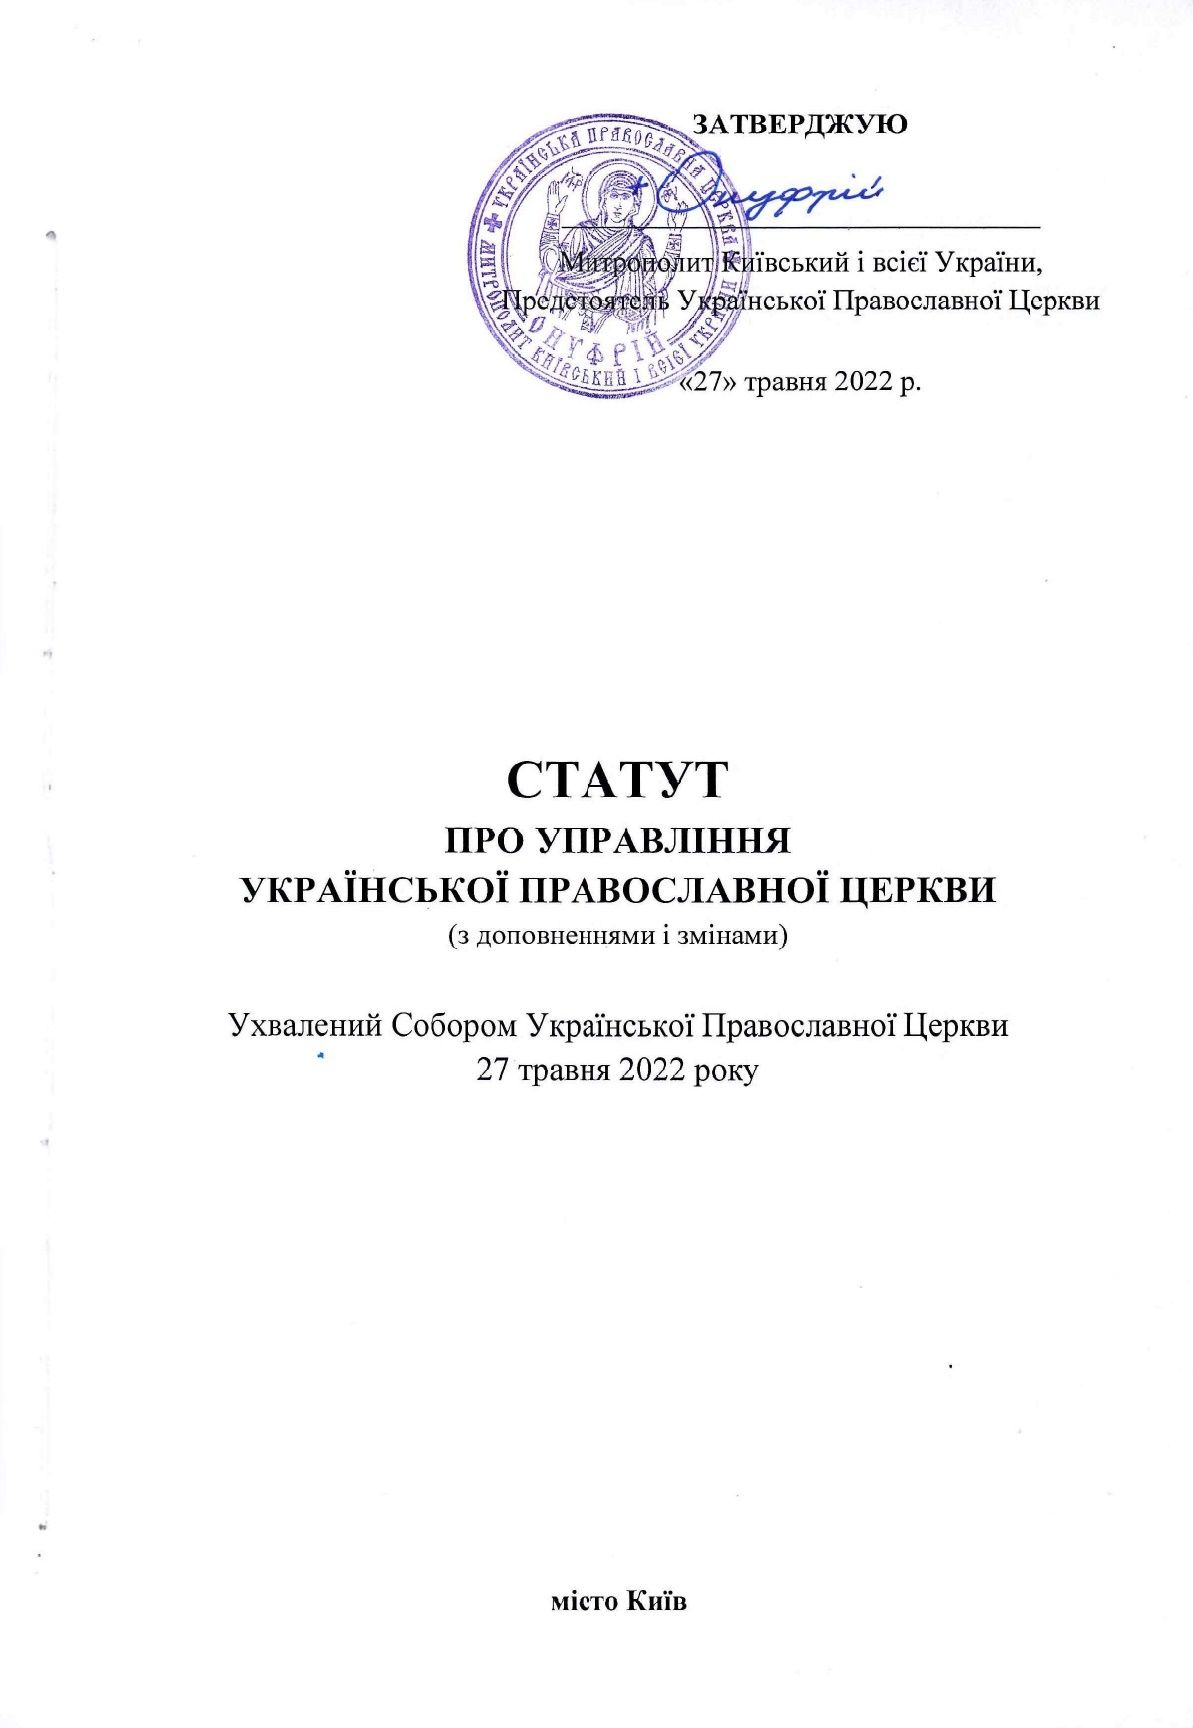 Статут про управління Української Православної Церкви (з доповненнями і змінами) від 27.05.2022 - фото 96532